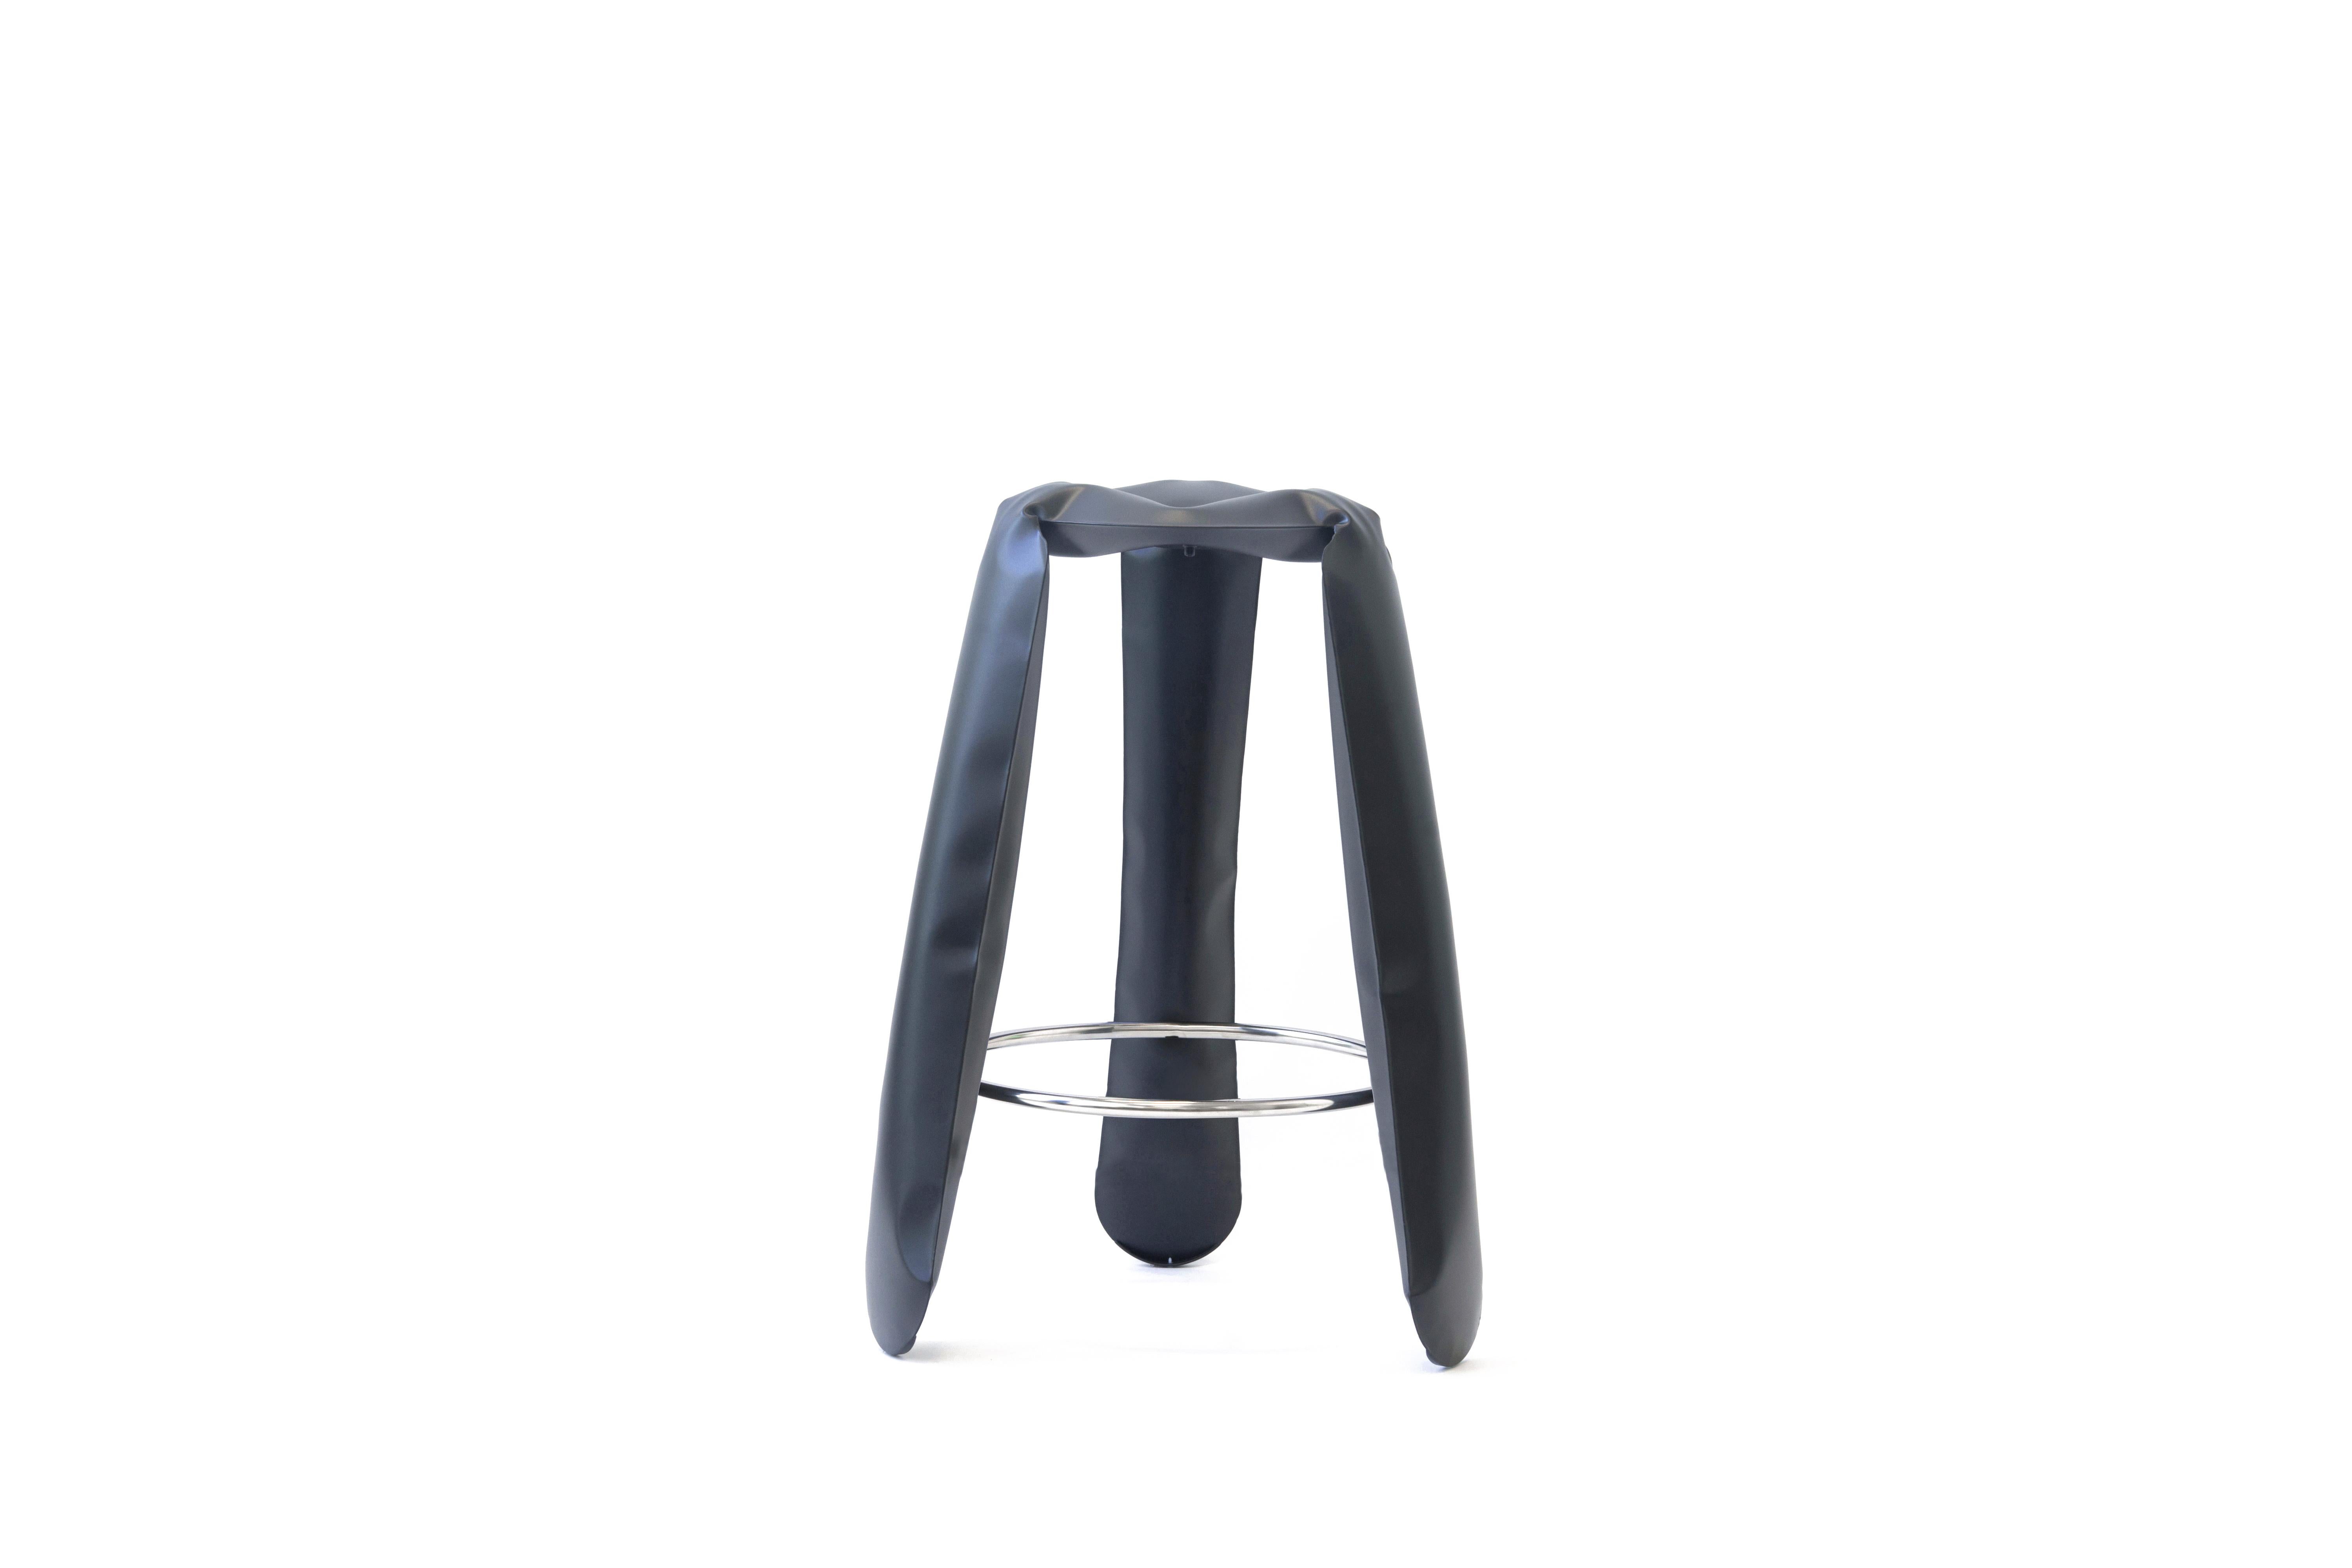 Tabouret de bar Plopp en acier graphite par Zieta
Dimensions : D 35 x H 75 cm 
Matériau : Acier au carbone. 
Finition : Revêtement en poudre.
Disponible en couleurs : Beige, noir, blanc, bleu, graphite, mousse, gris umbra, or flamboyant et bleu